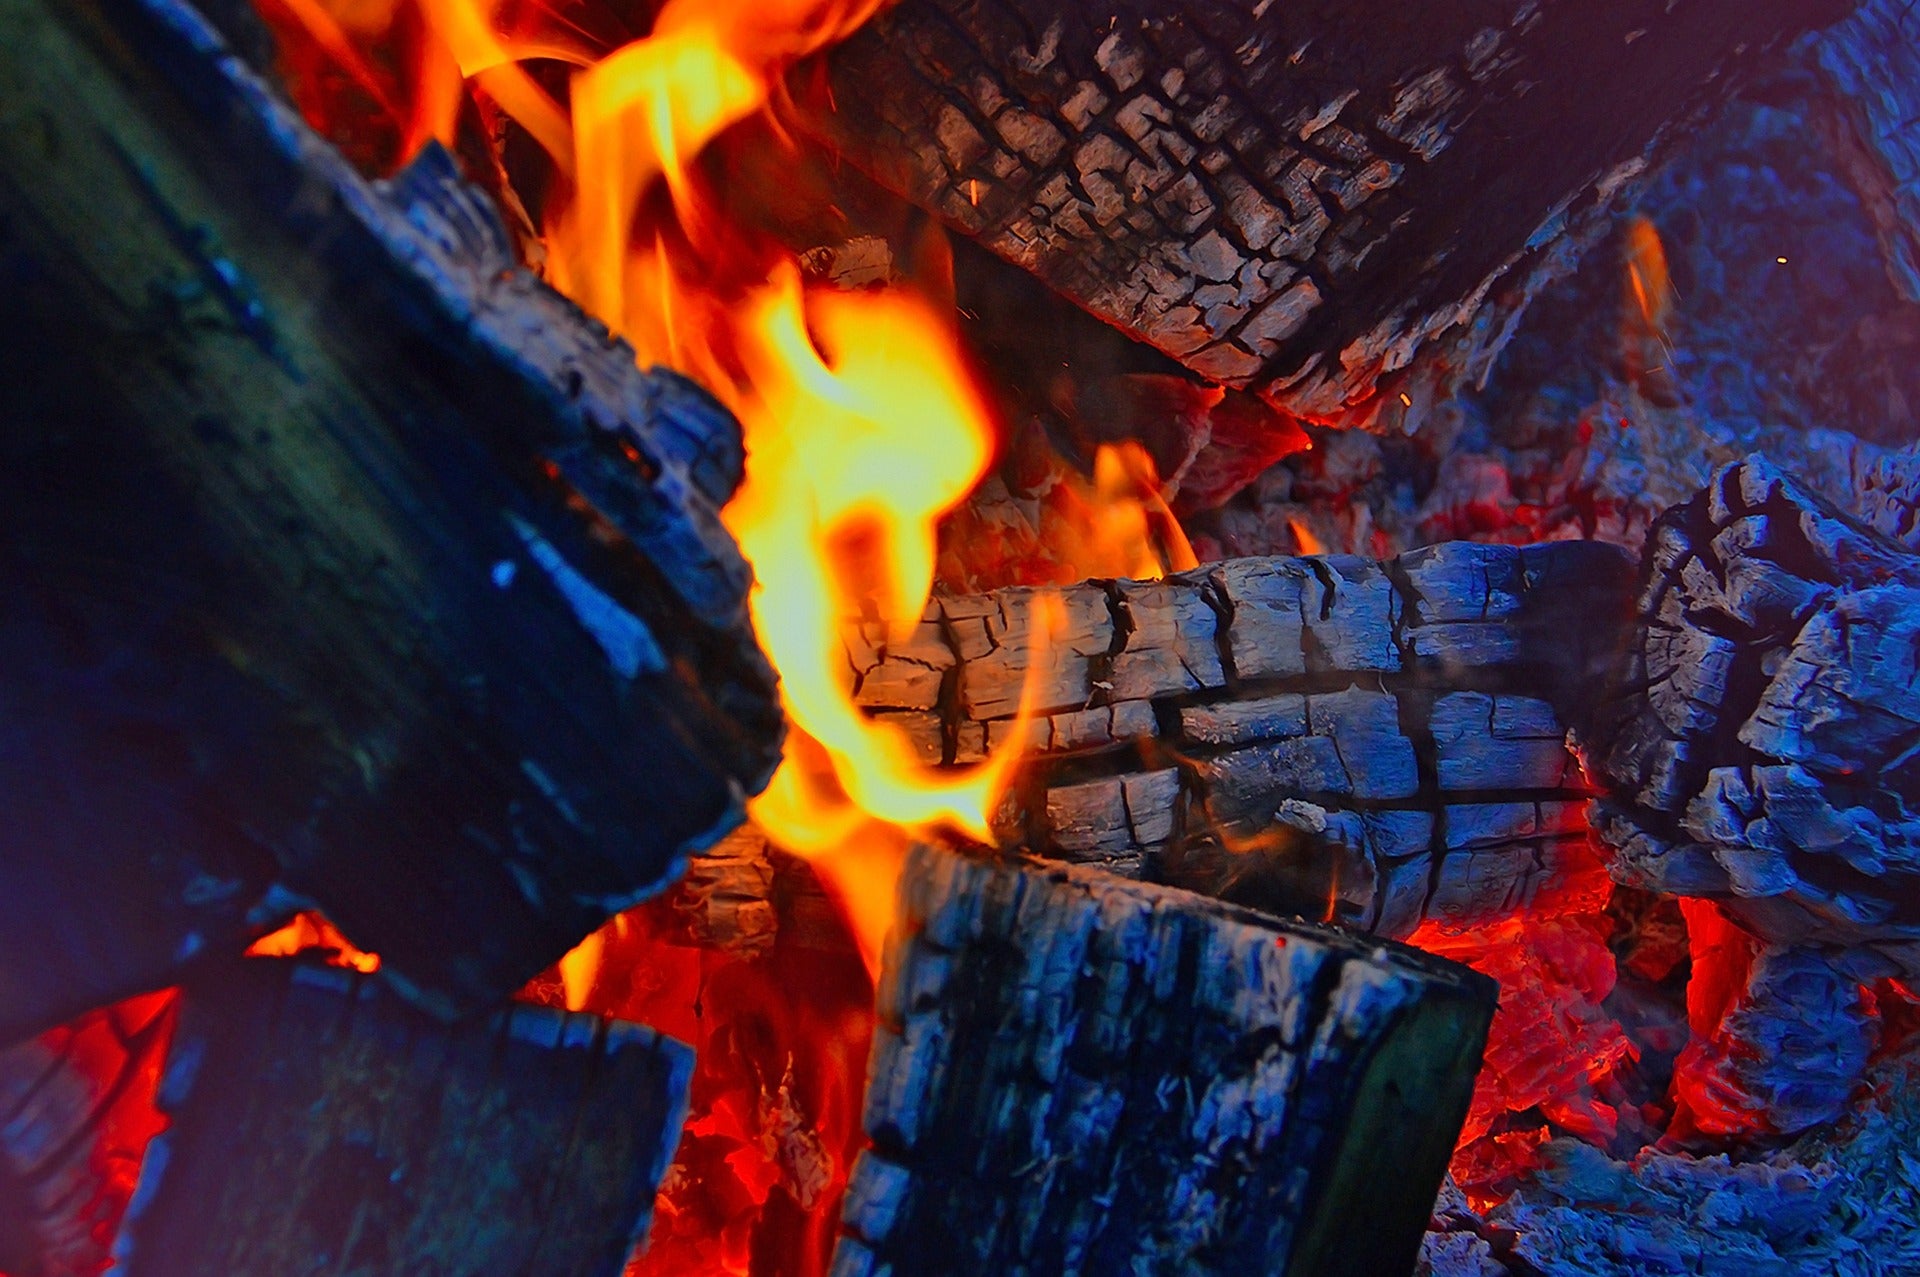 Hot coals in a fire. 